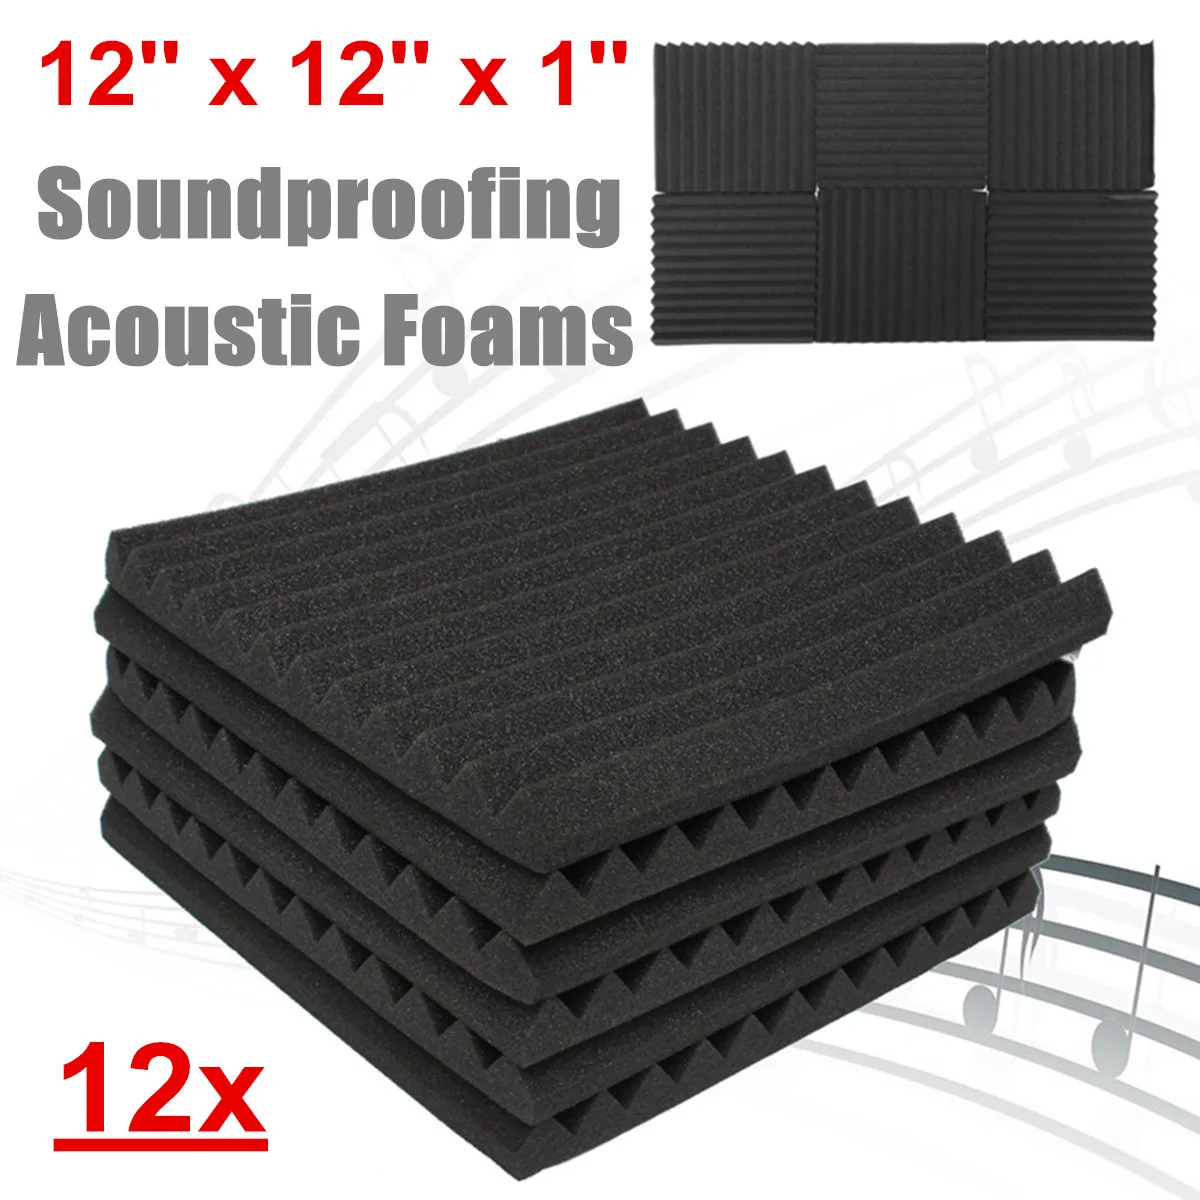 Звукоизоляционные пенопластовые студийные акустические панели из пенопласта 30x30x2,5 см черные клинья звукоизоляционные поглощающие лечебные панели 12 шт. в комплекте